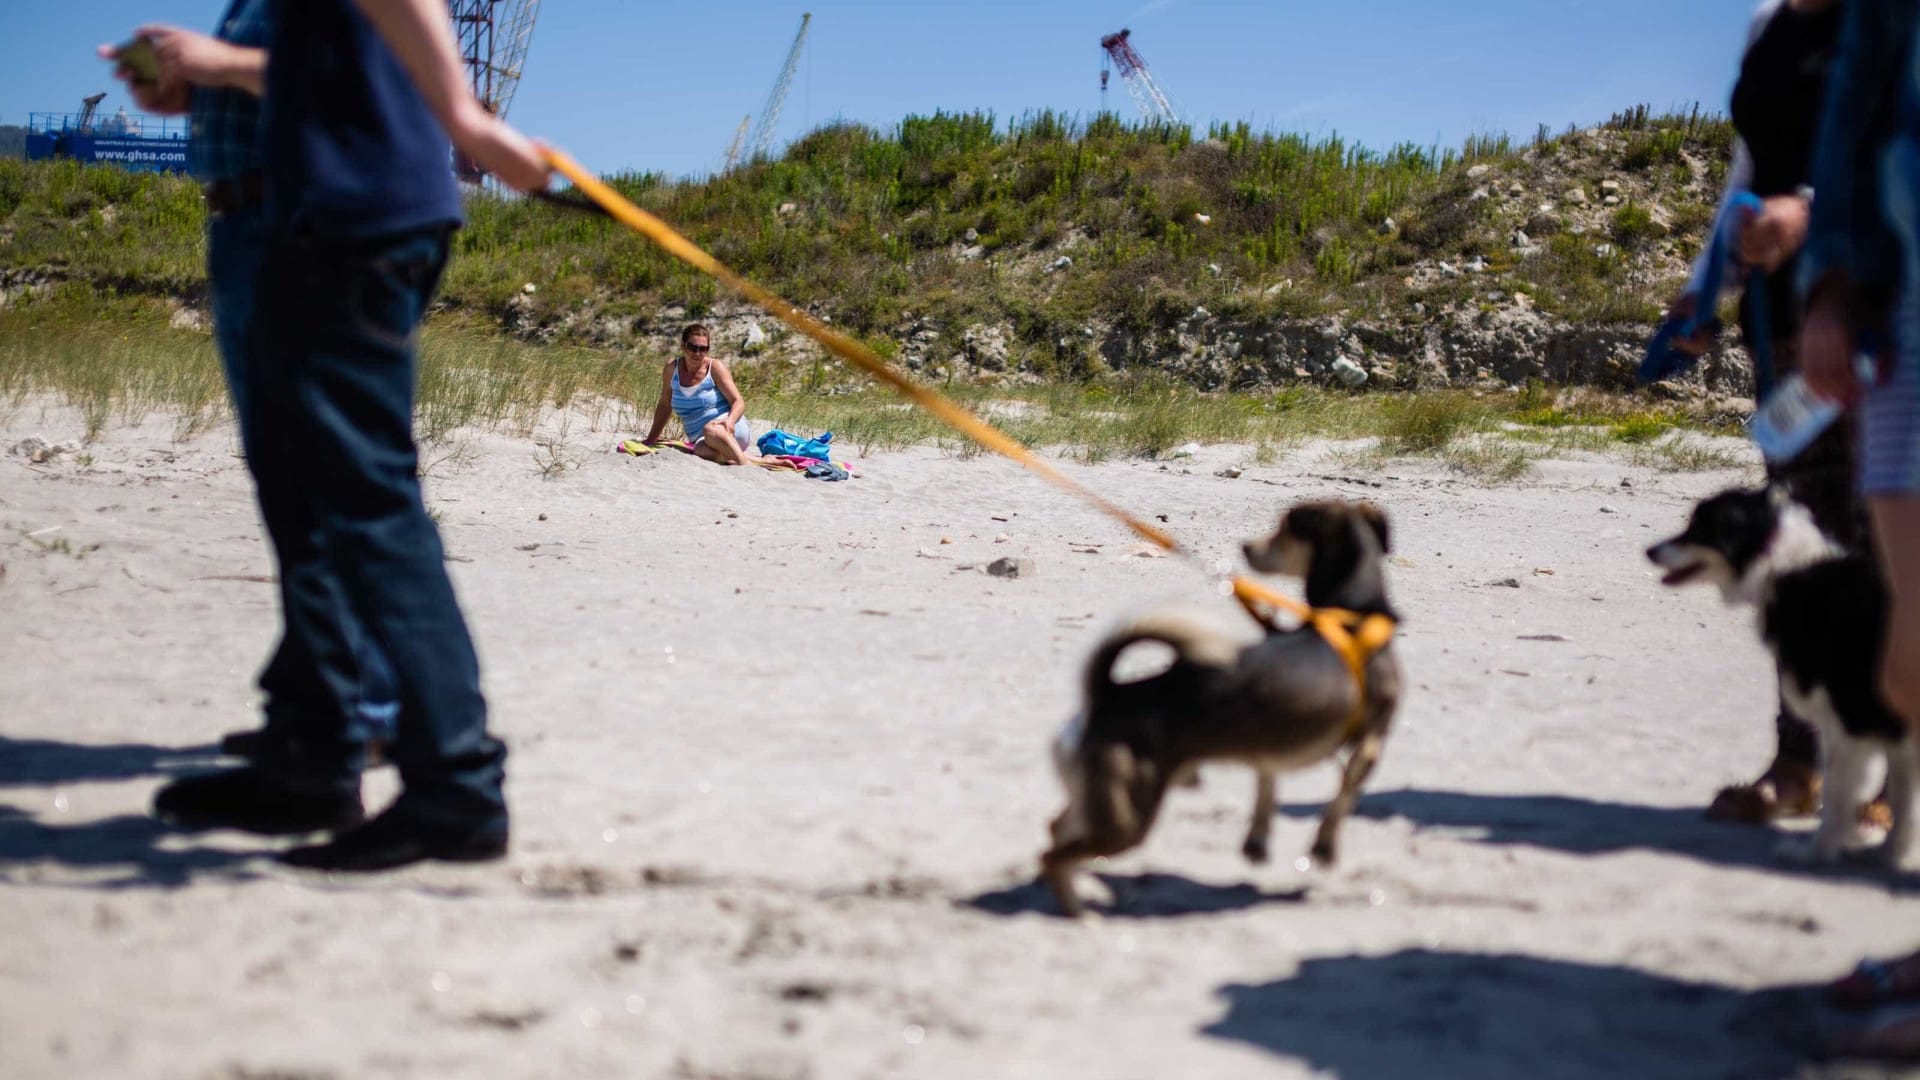 Presença de cães nas praias é frequente mas gera poucas contraordenações